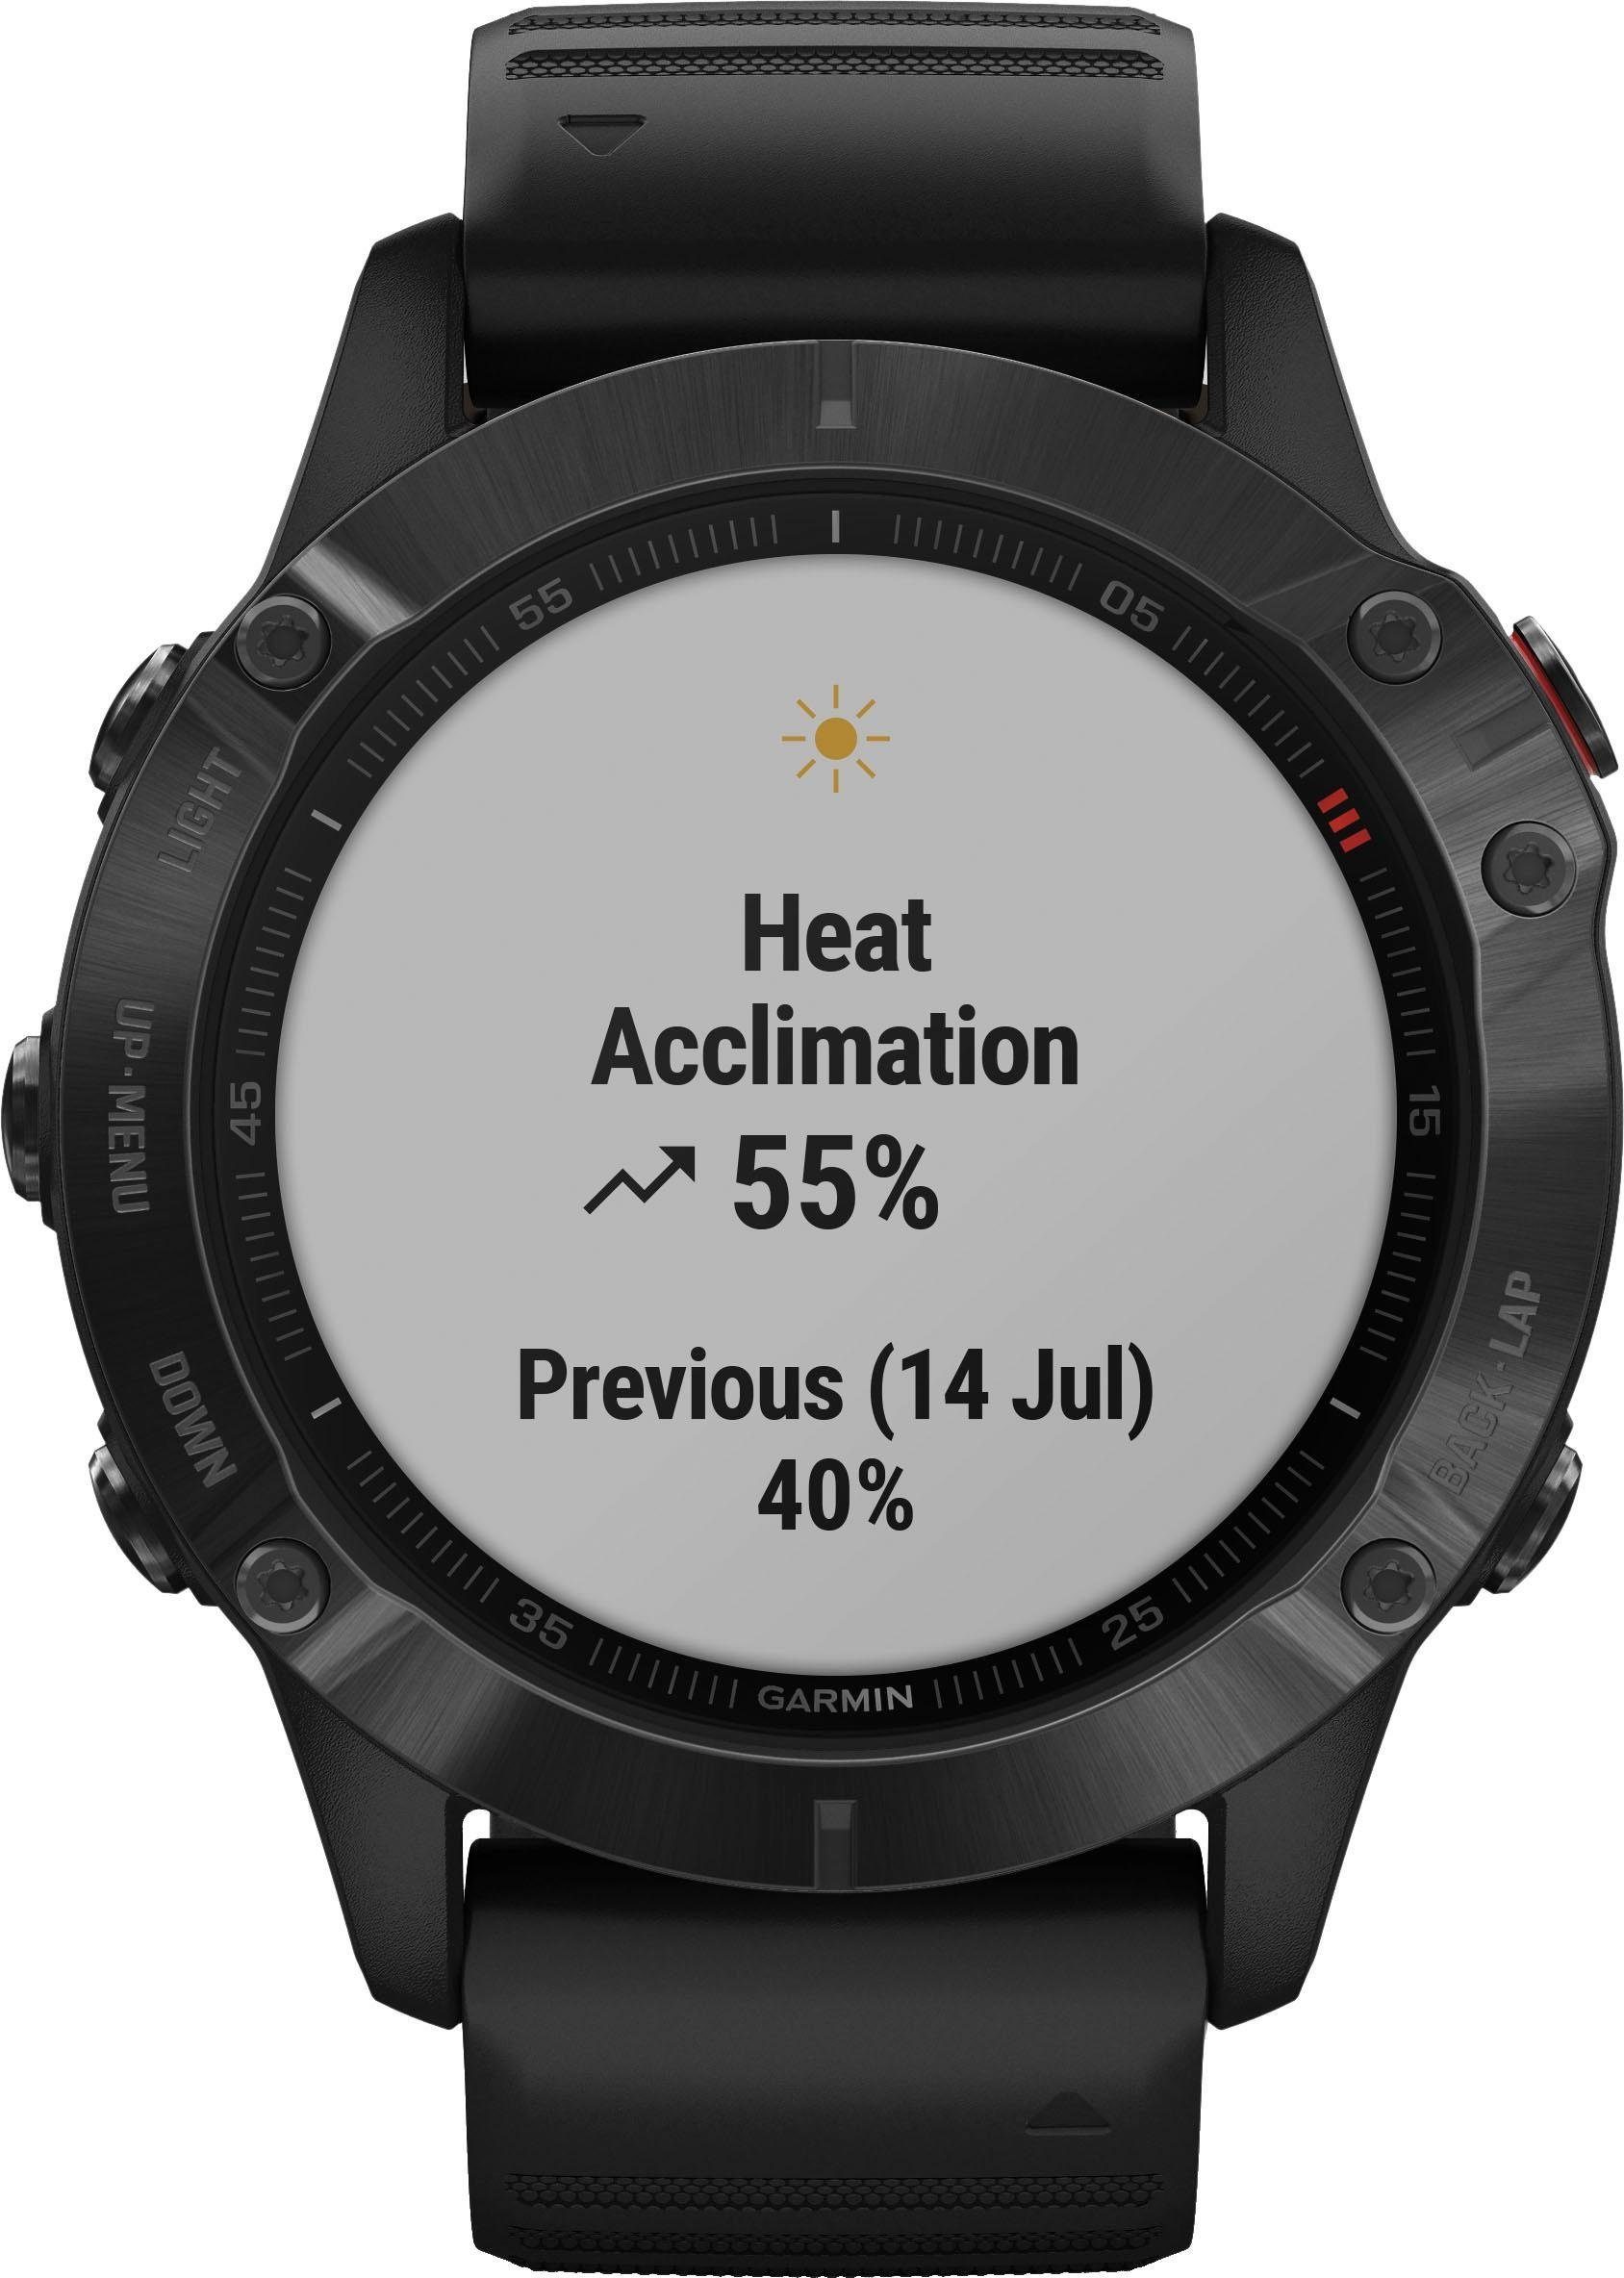 Garmin FENIX 6 – Pro Smartwatch (3,3 cm/1,3 Zoll), Vorinstallierte Karten  zur Navigation auf der Uhr